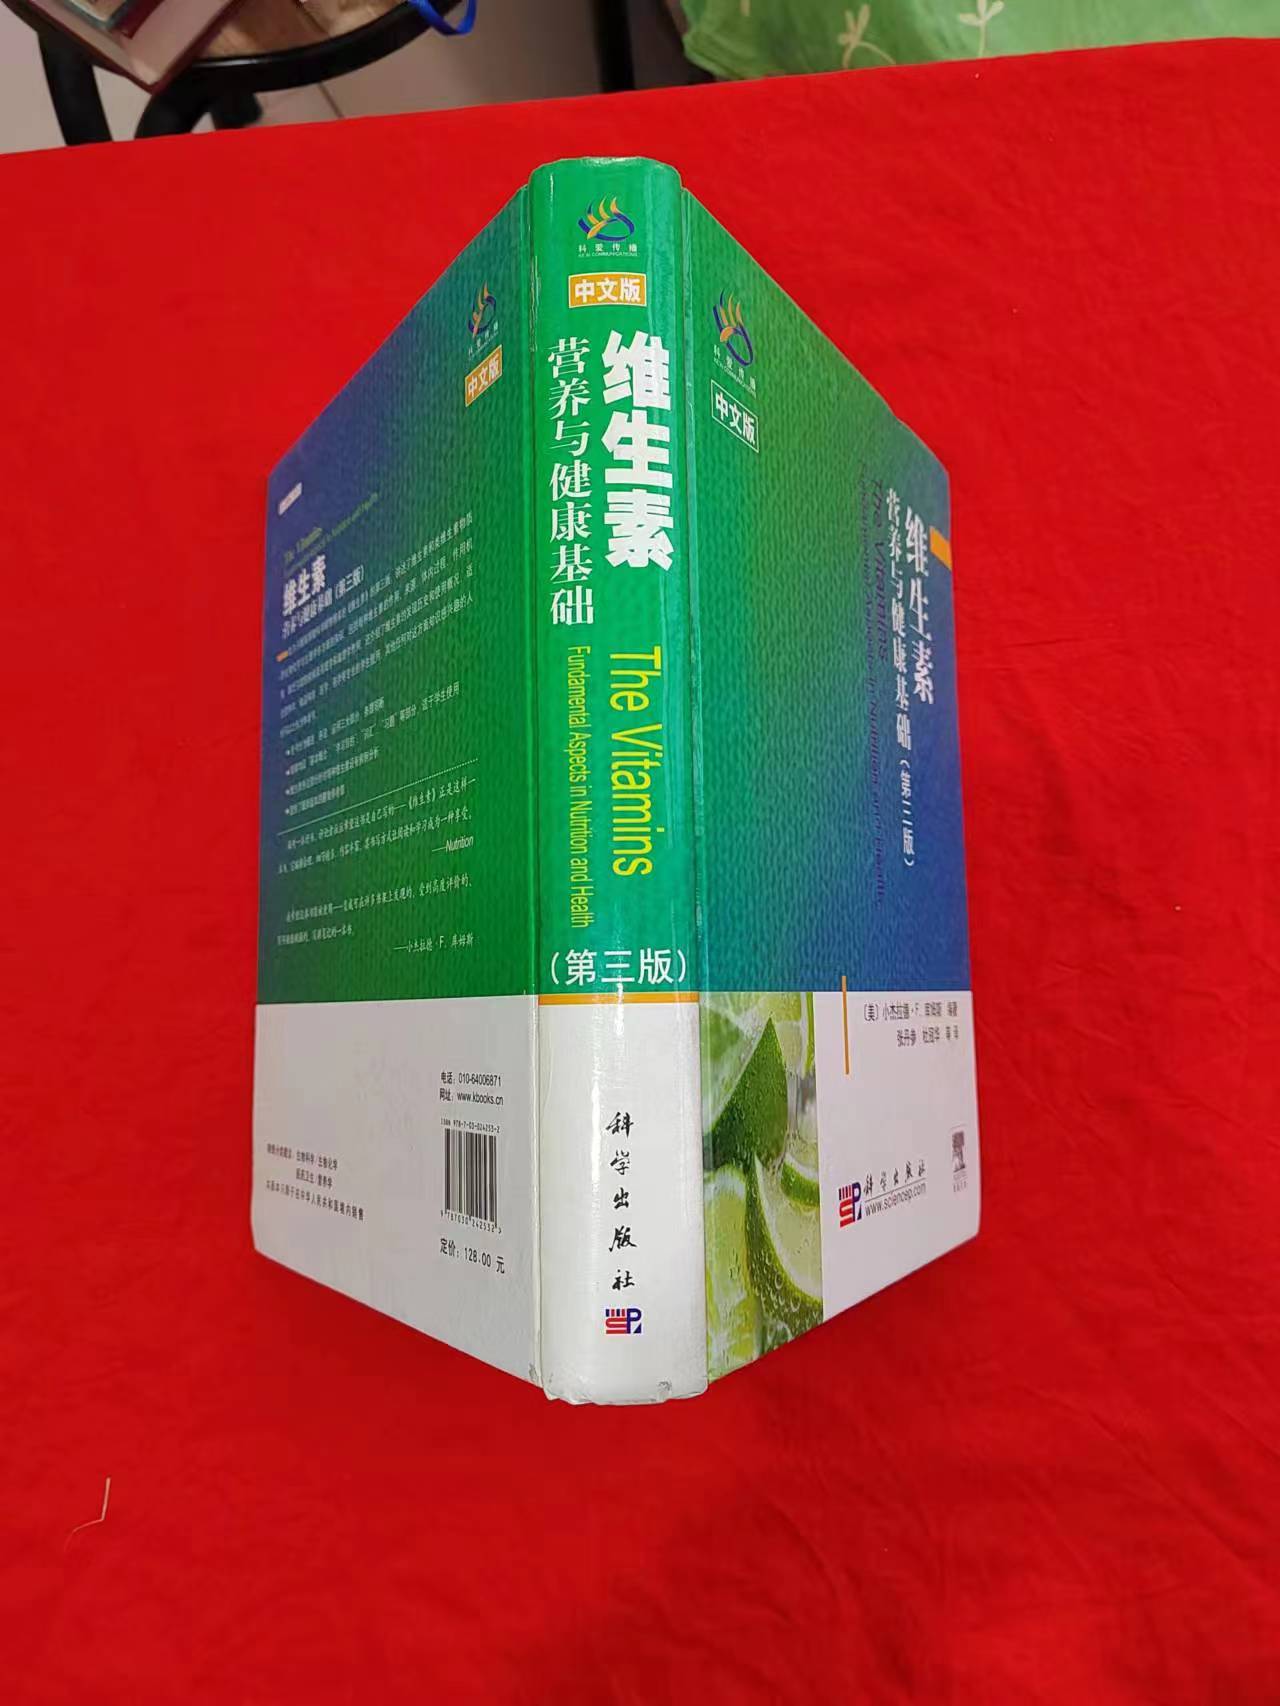 【回收】北京二手书回收店-旧书回收上门电话-回收多少钱-回收厂家联系方式【众志诚再生资源回收】